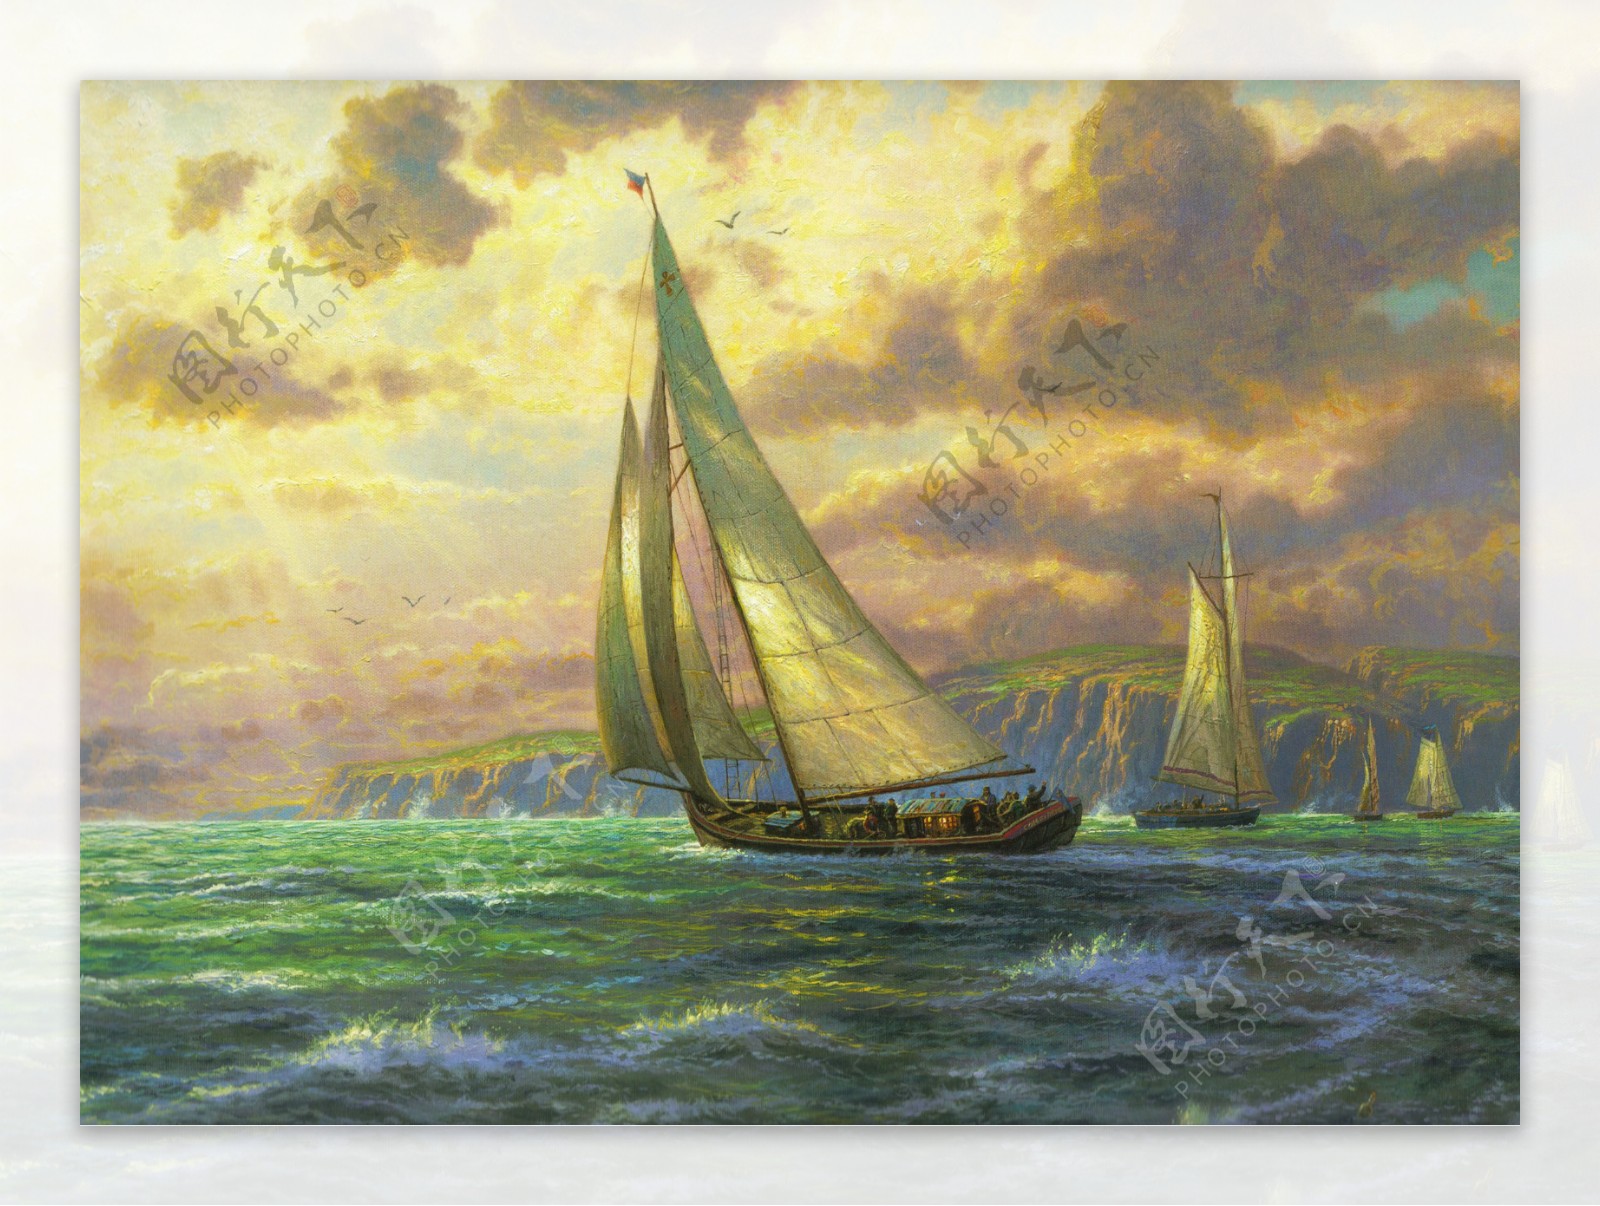 托马斯高清风景油画之帆船海景